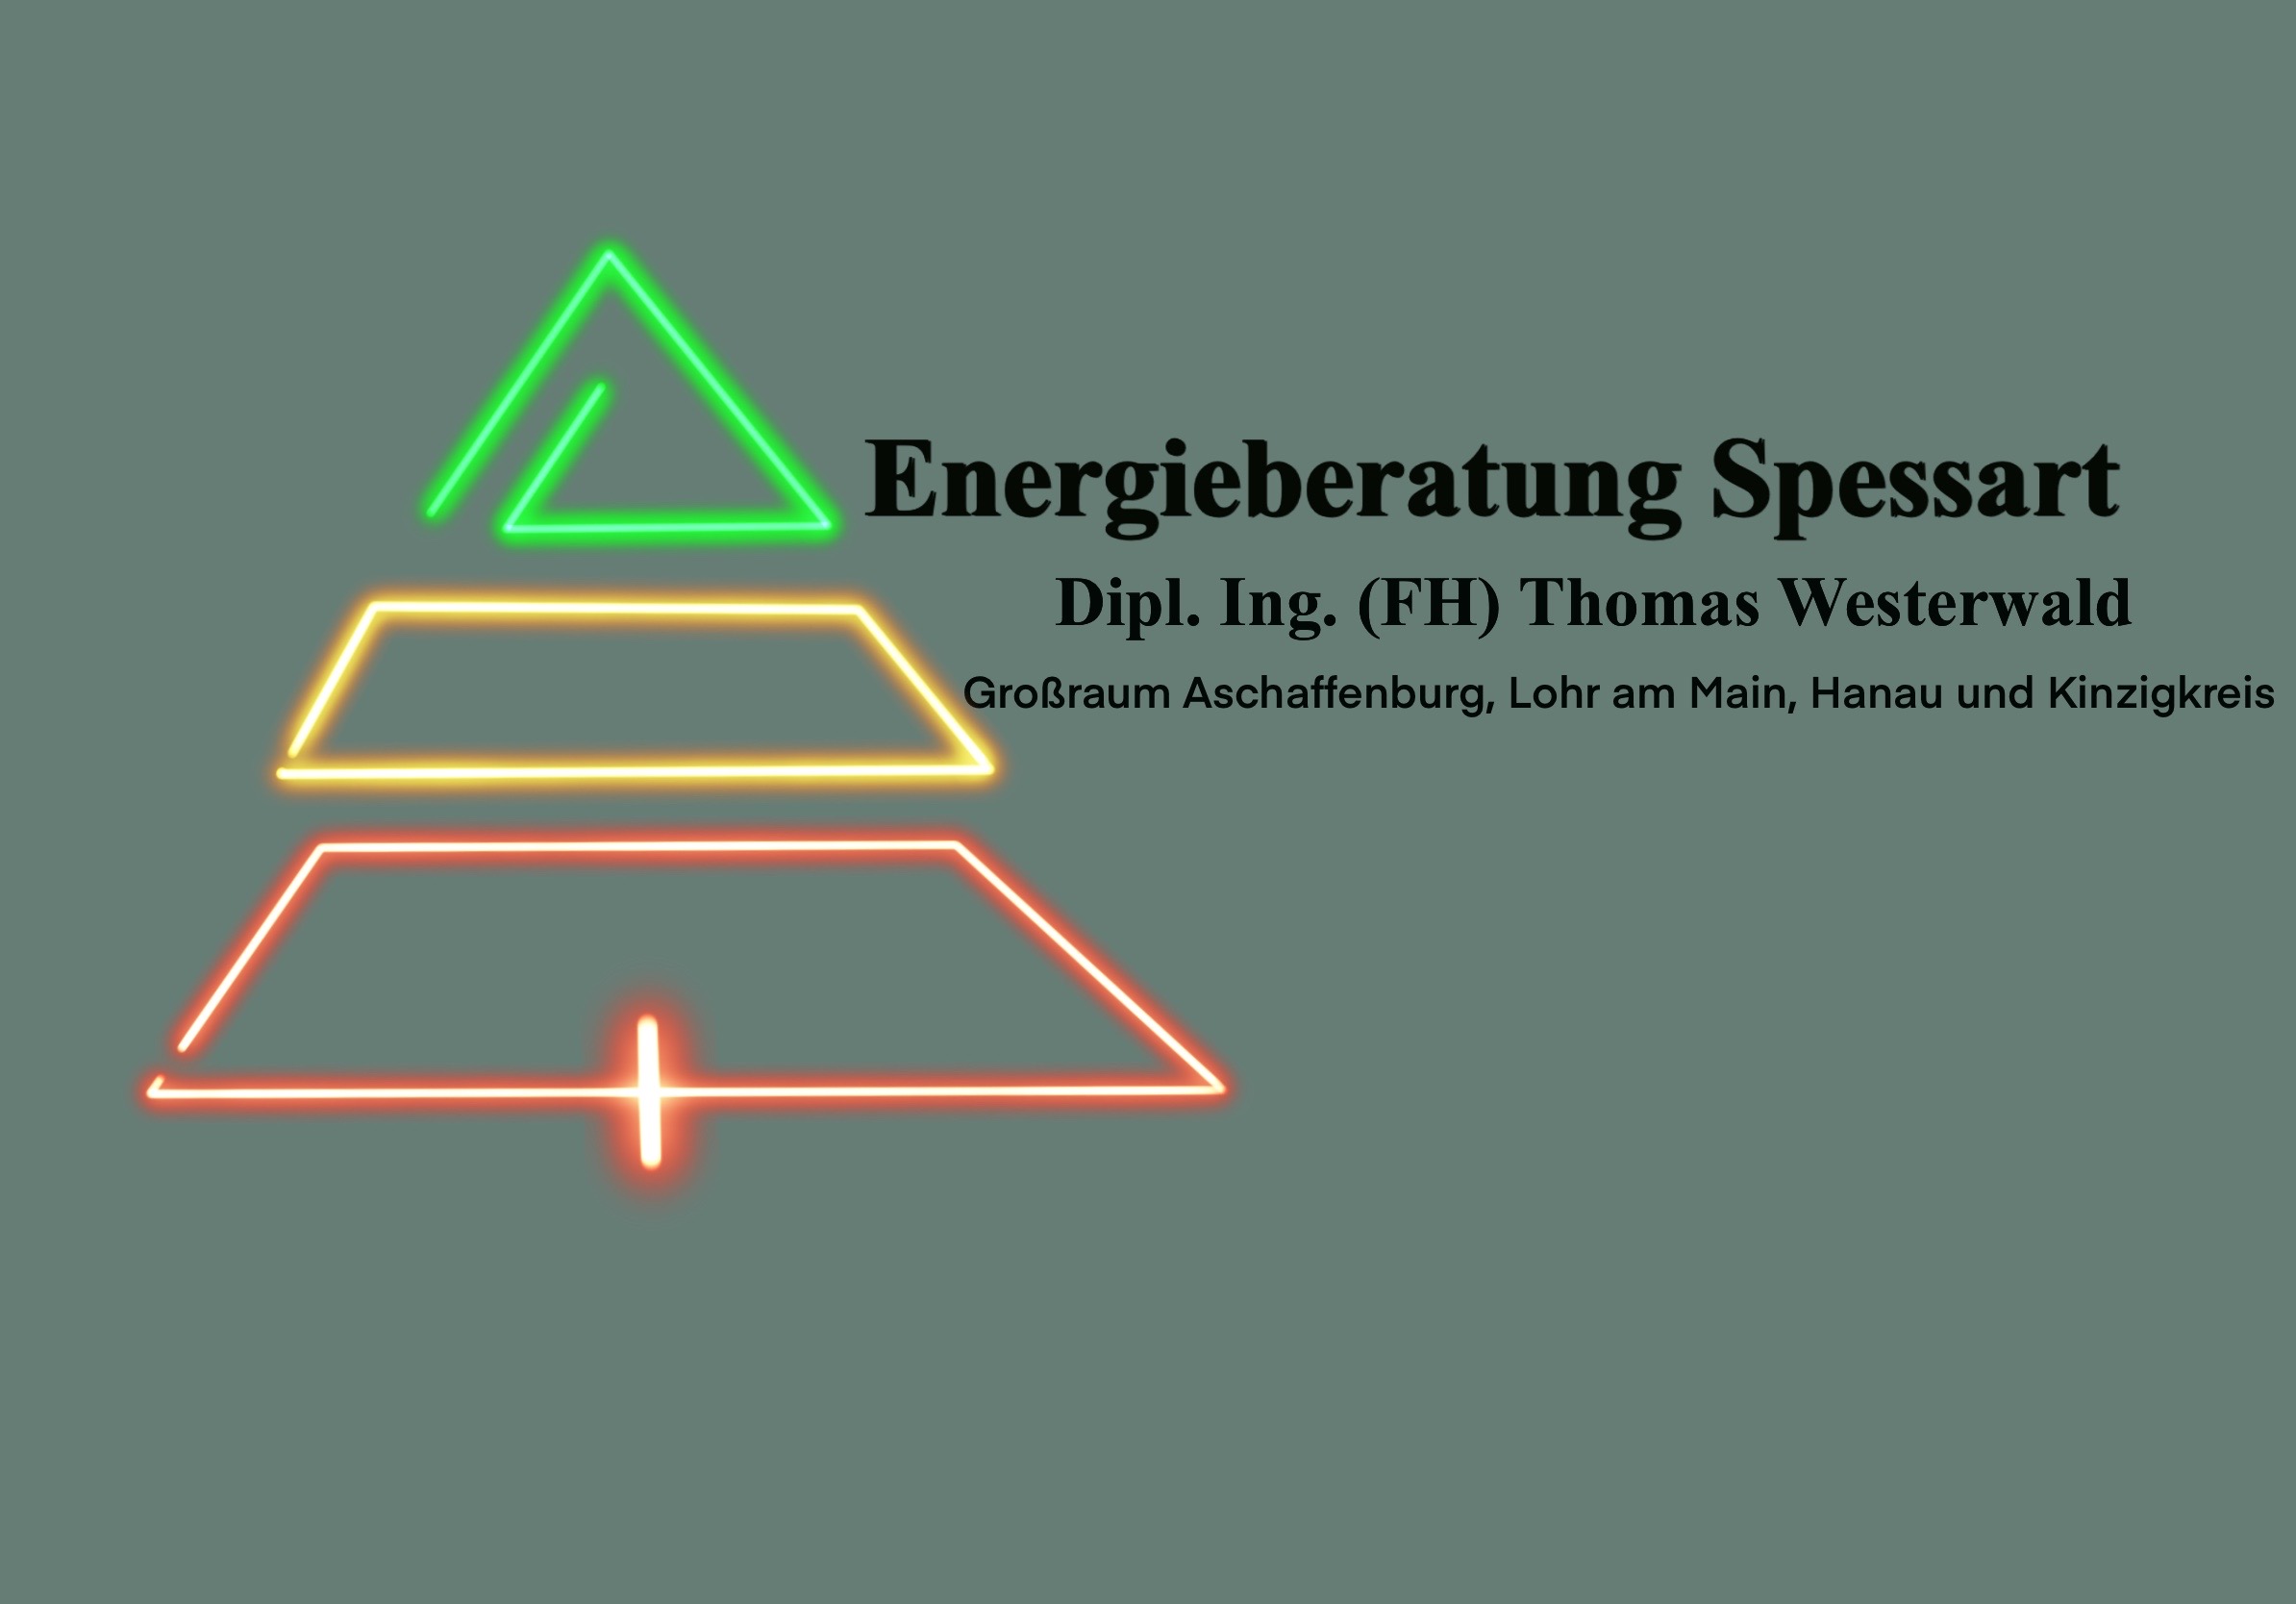 (c) Energieberatung-spessart.de